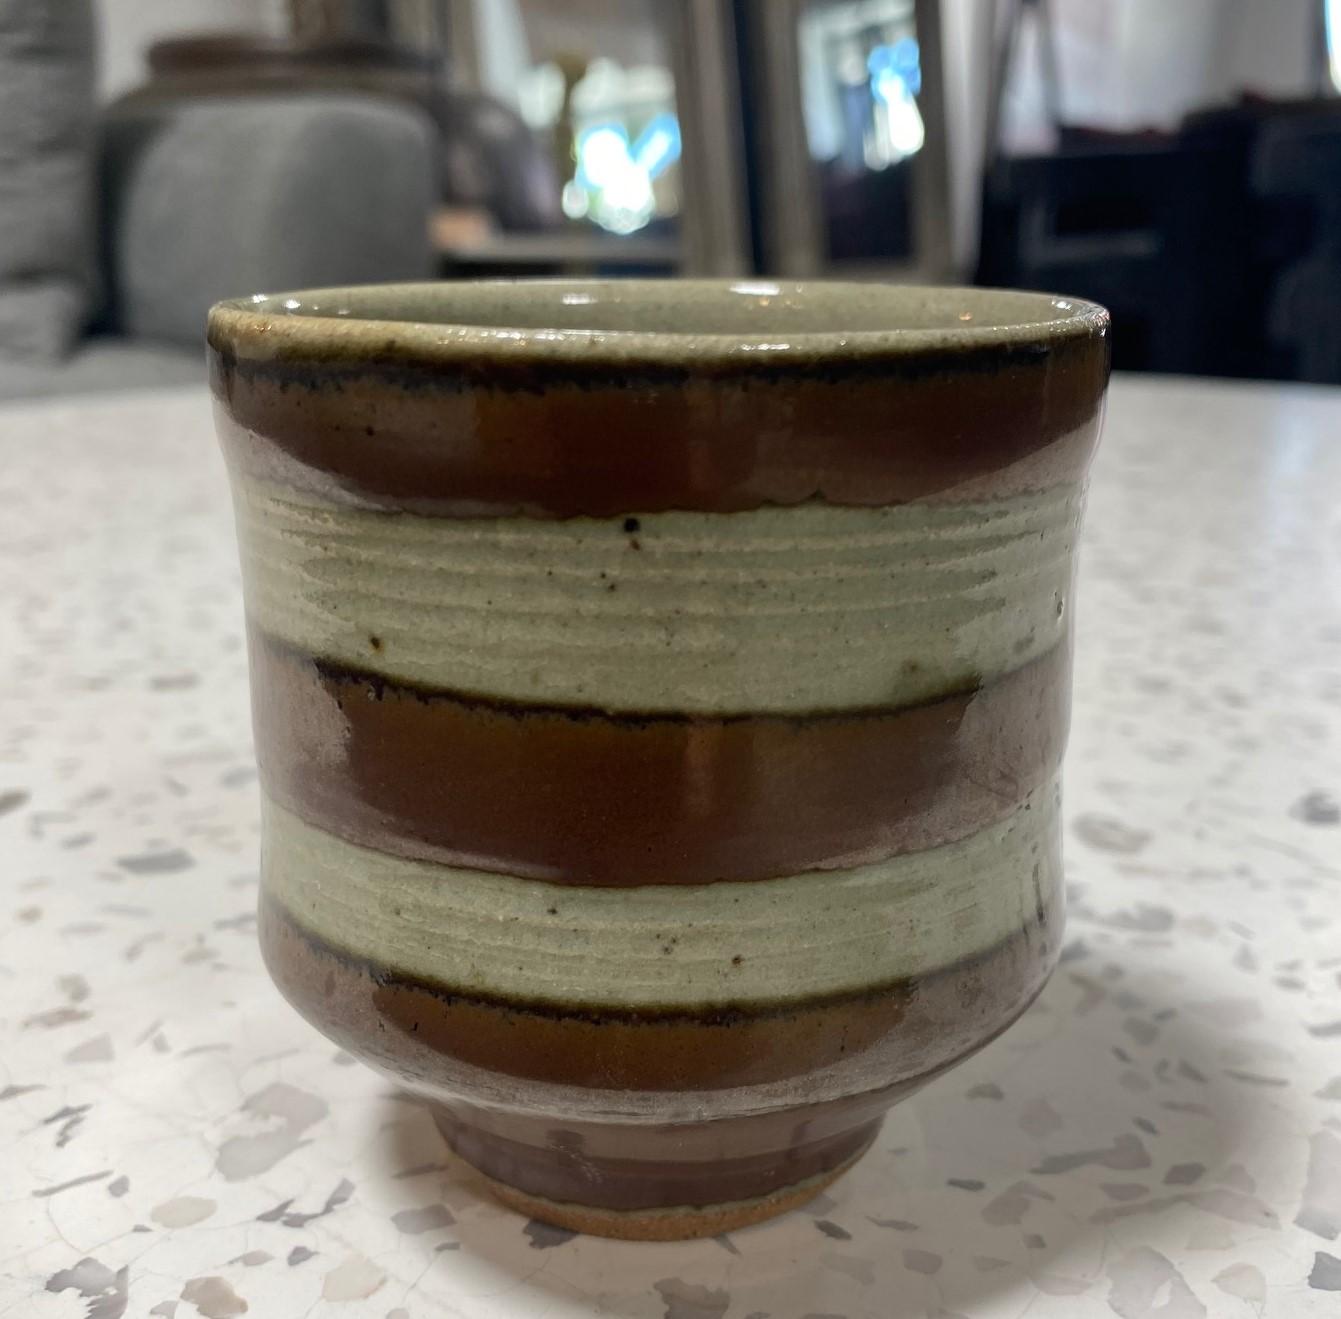 Une tasse à thé Yunomi exquise, magnifiquement travaillée et merveilleusement conçue par le maître potier japonais Shoji Hamada, avec sa technique résistante à la cire et sa très convoitée glaçure épaisse et riche Kaki sur la poterie en grès de